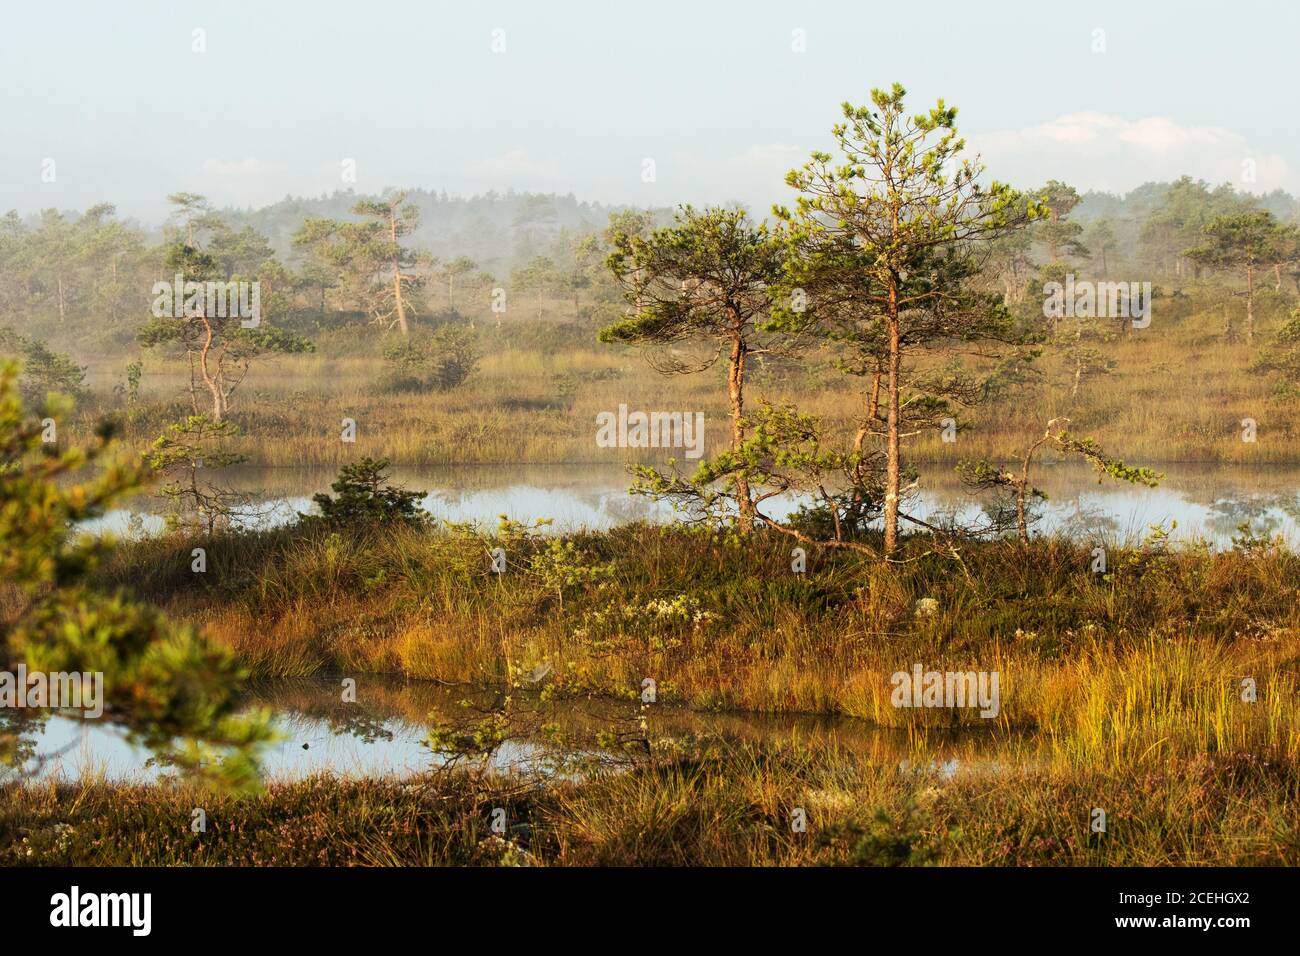 Una mattina tranquilla e silenziosa nel paesaggio della palude estone con alcuni piccoli laghi di palude e una leggera nebbia. Foto Stock